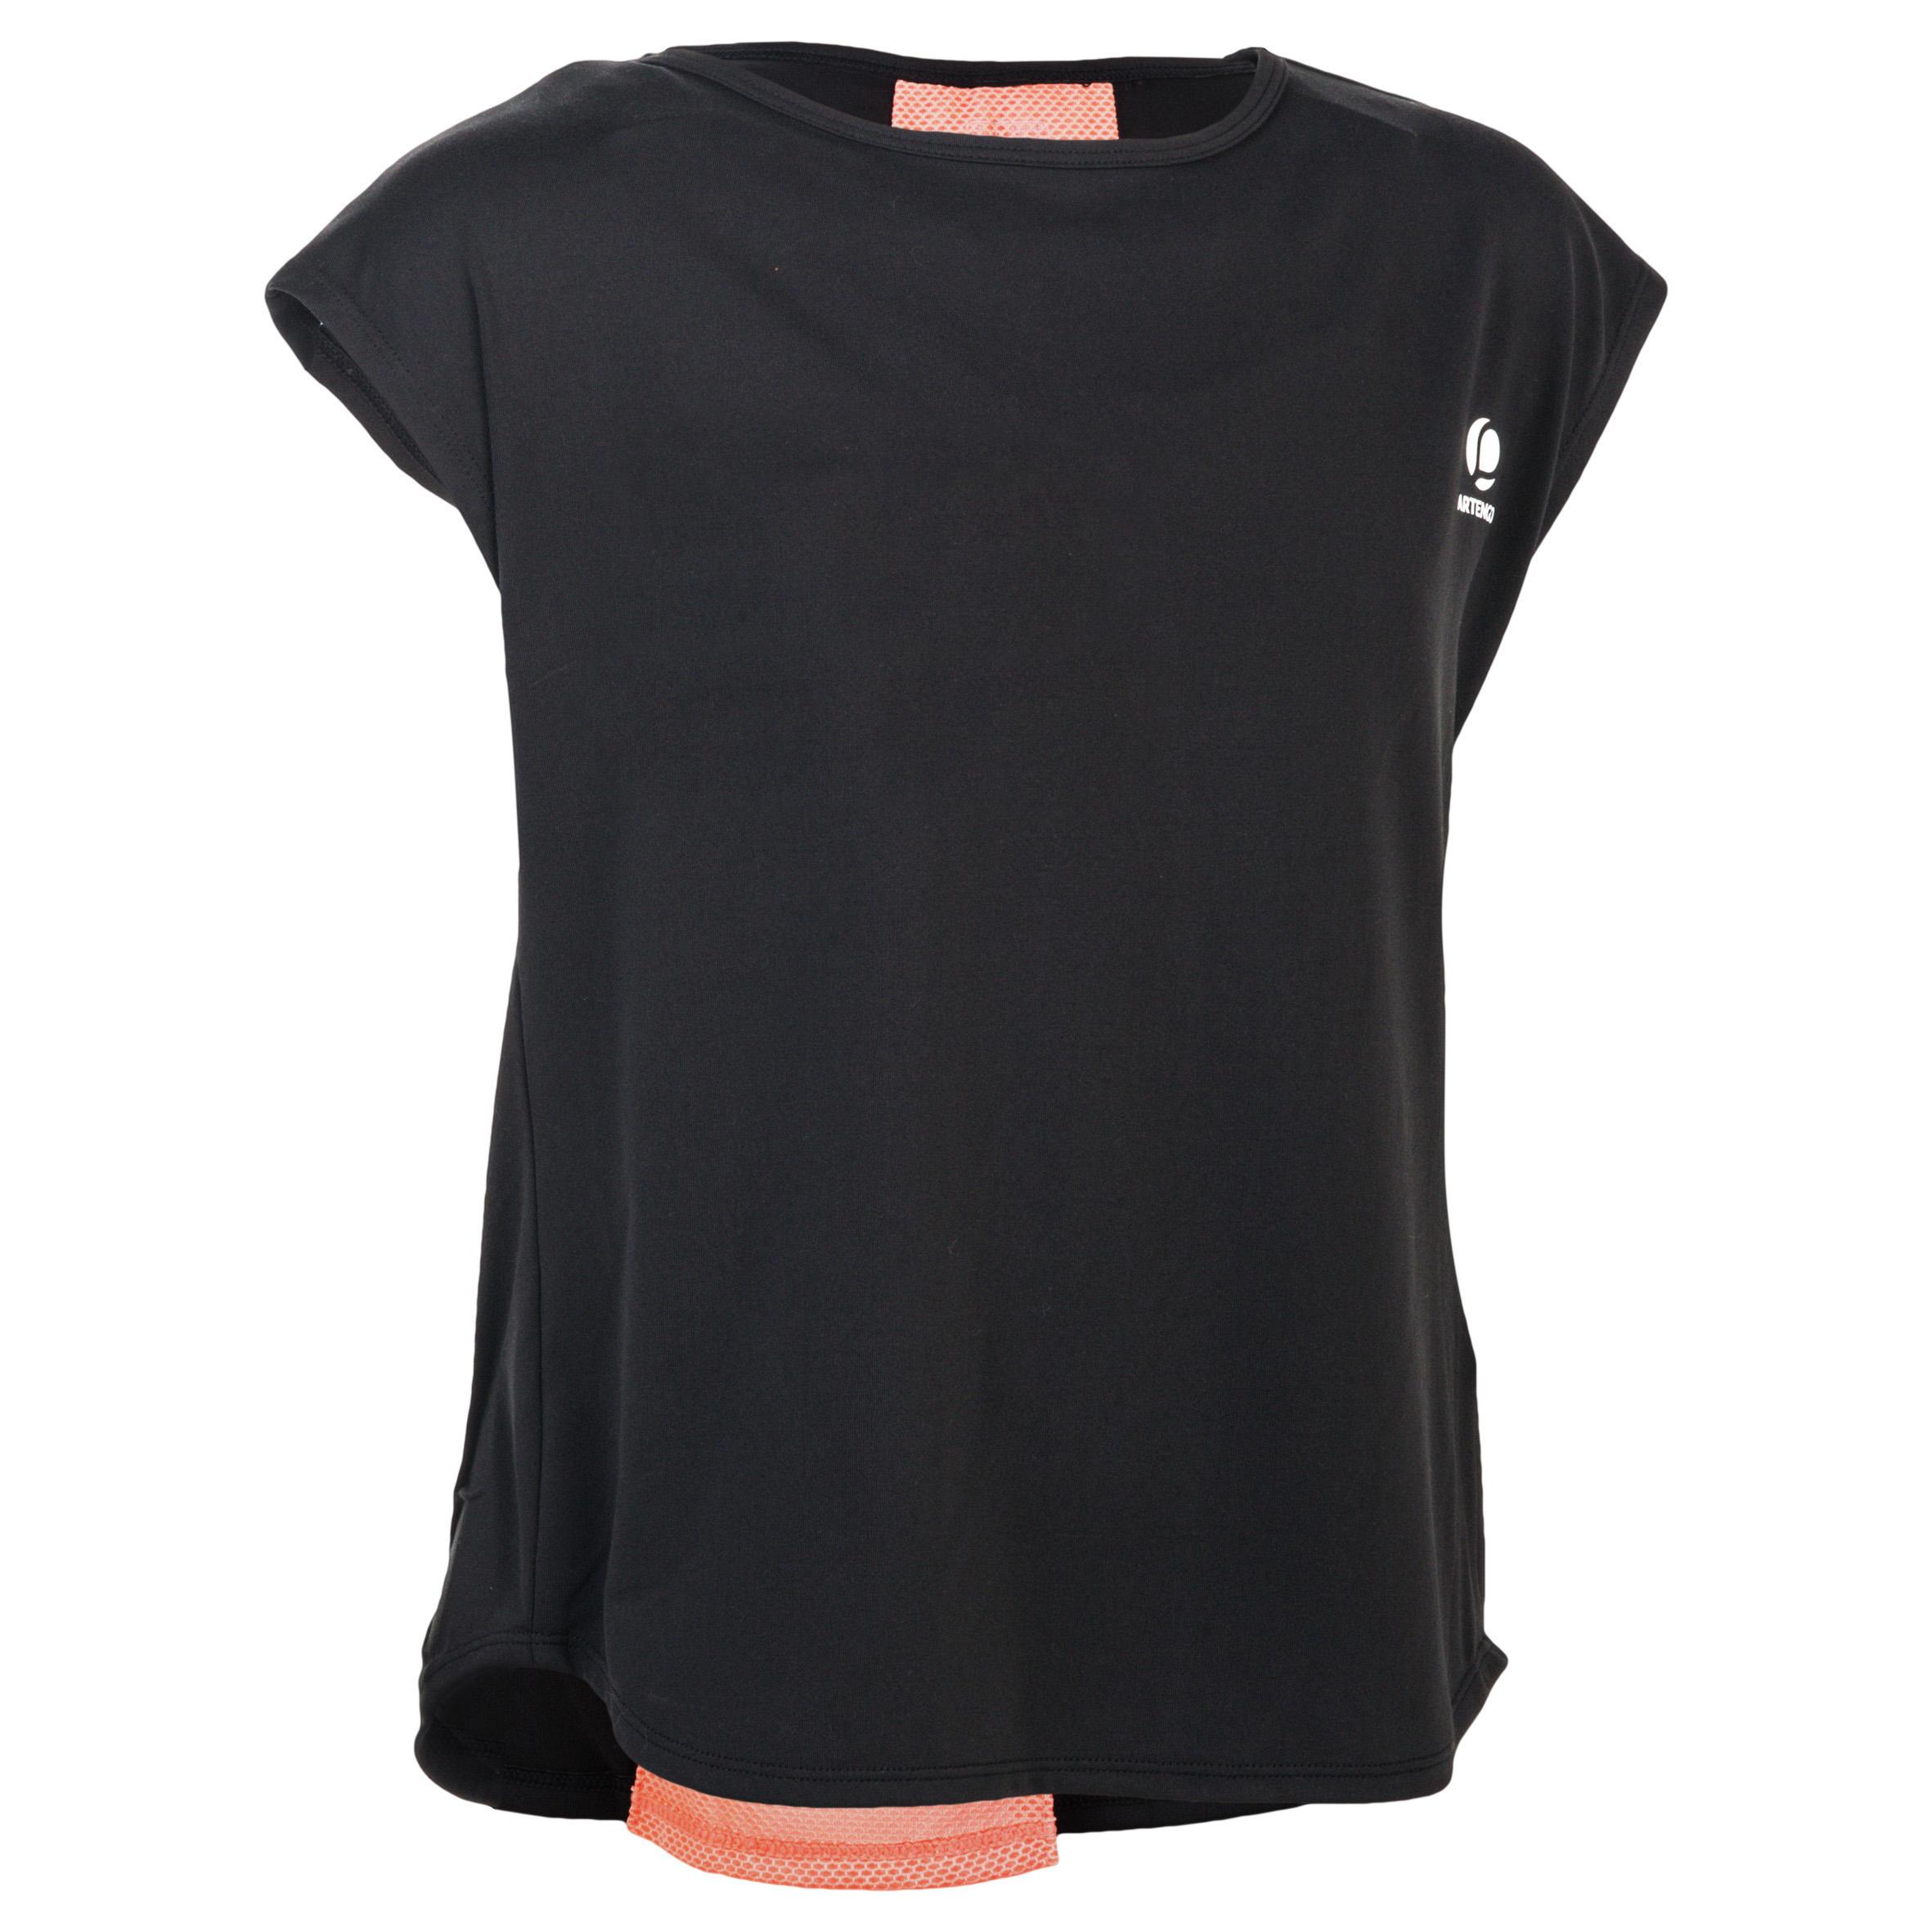 [ด่วน!! โปรโมชั่นมีจำนวนจำกัด] เสื้อยืดสำหรับเด็กผู้หญิงรุ่น 500 (สีดำ) สำหรับ เทนนิส พาเดิล